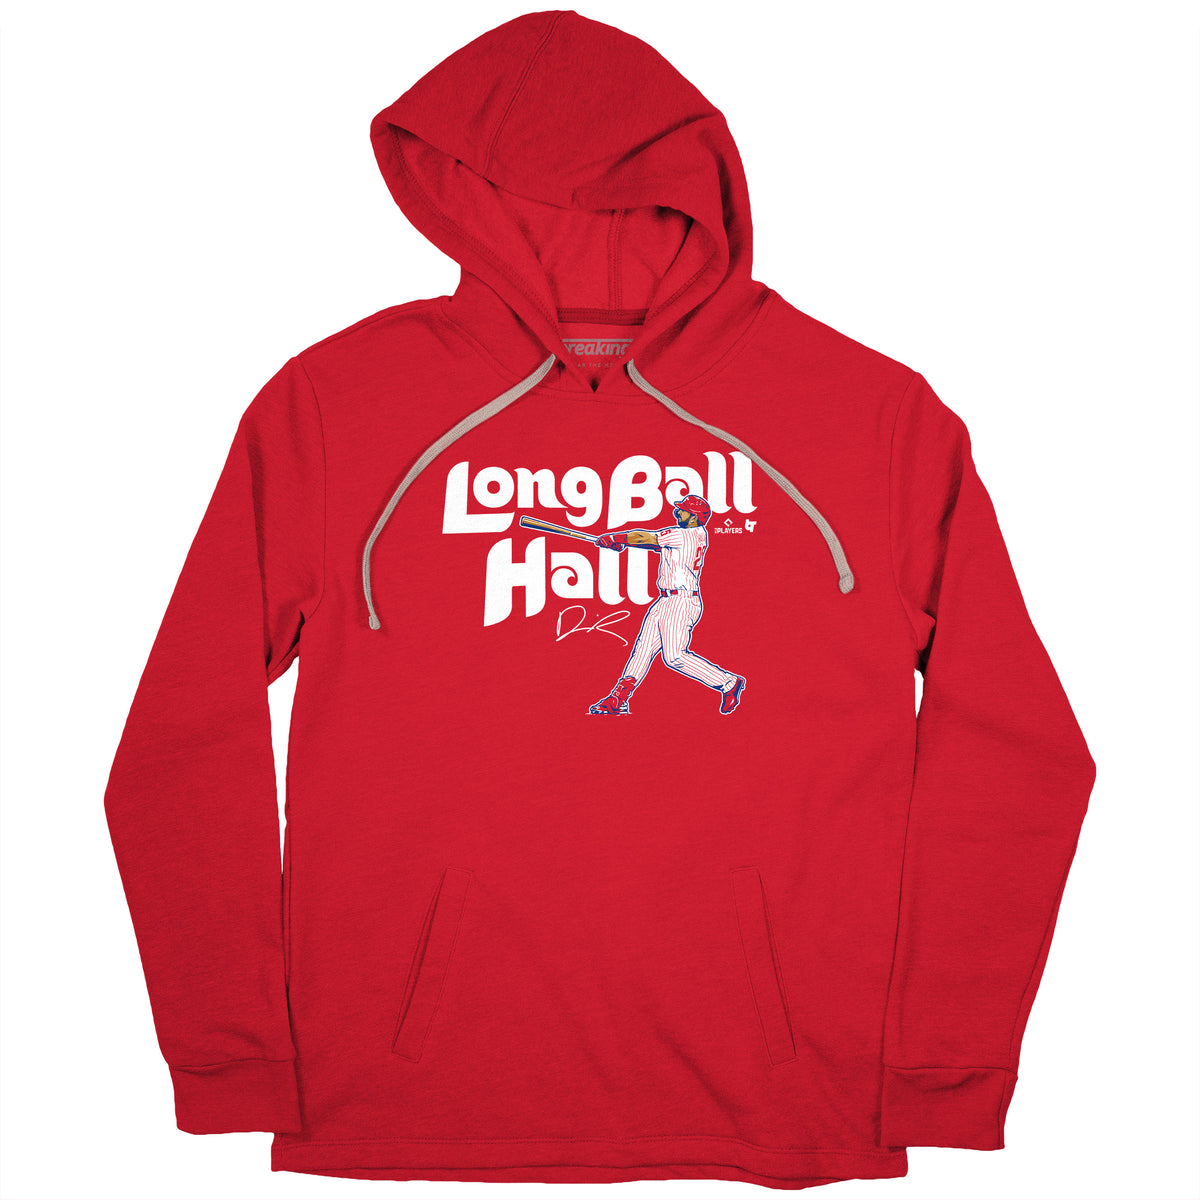 Darick Long Ball Hall Shirt+Hoodie, Philly -MLBPA Licensed- BreakingT